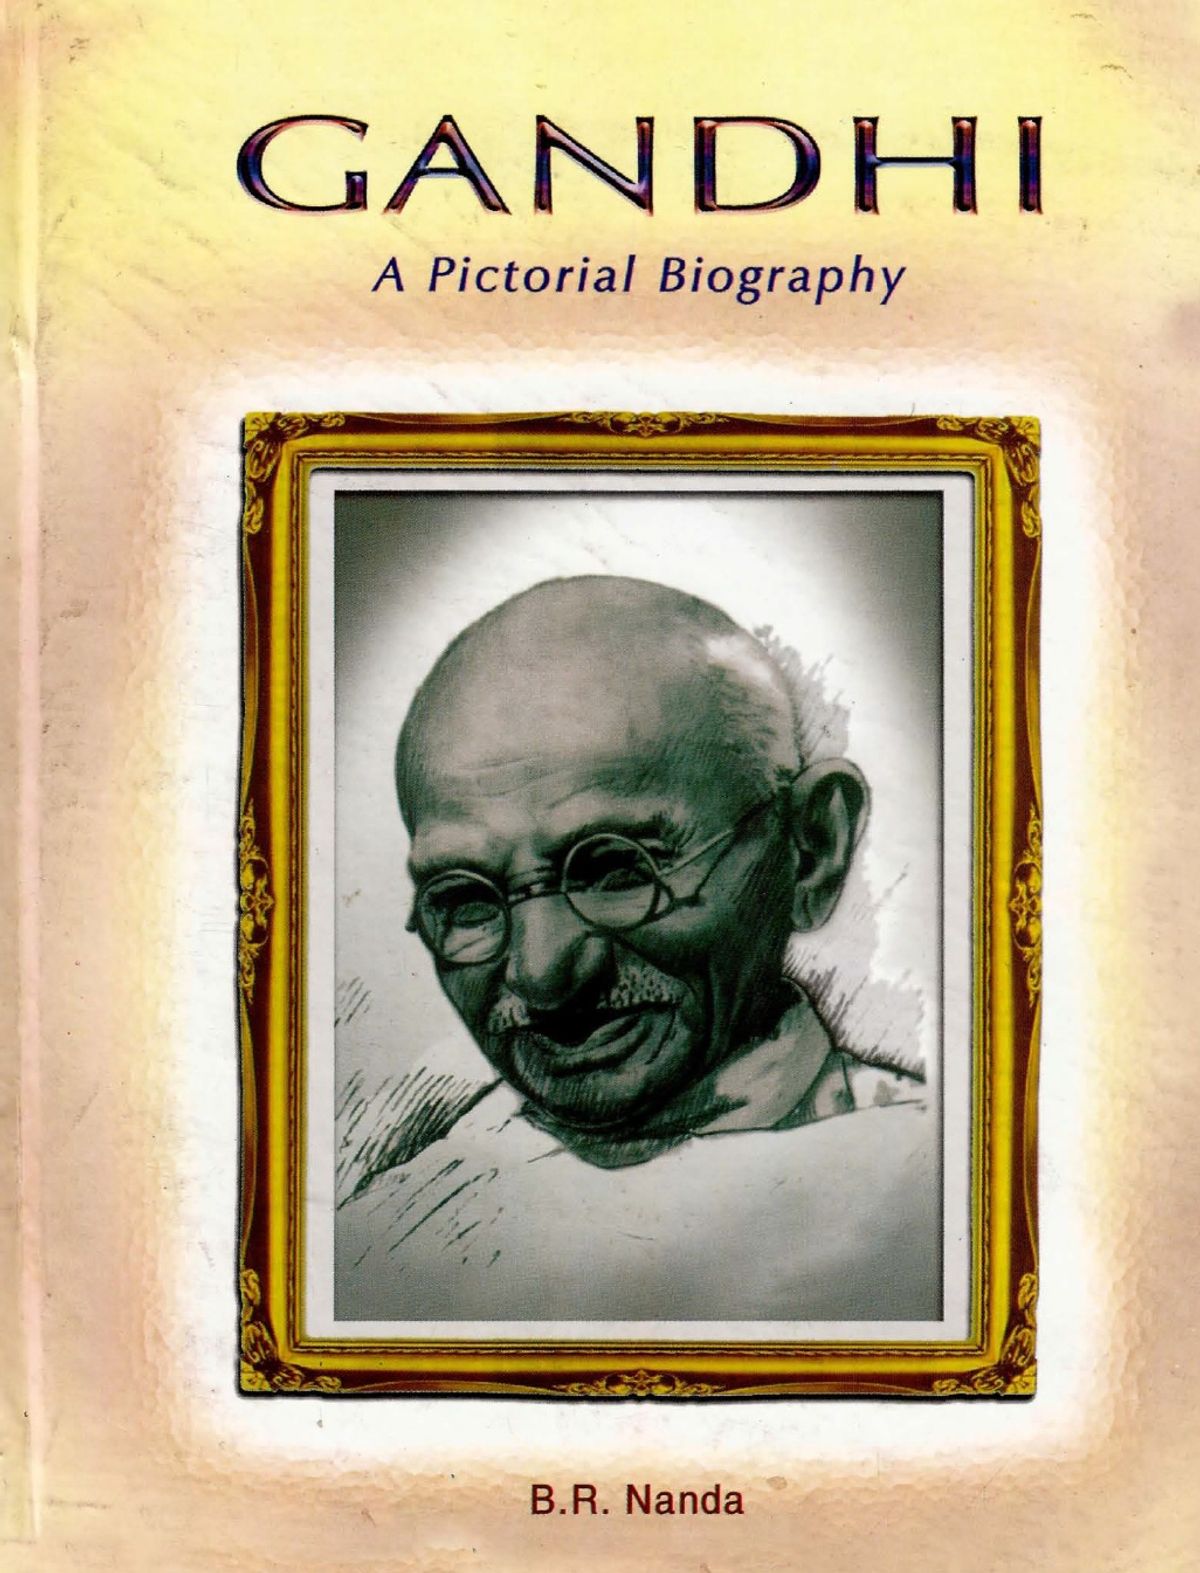 best gandhi biography book